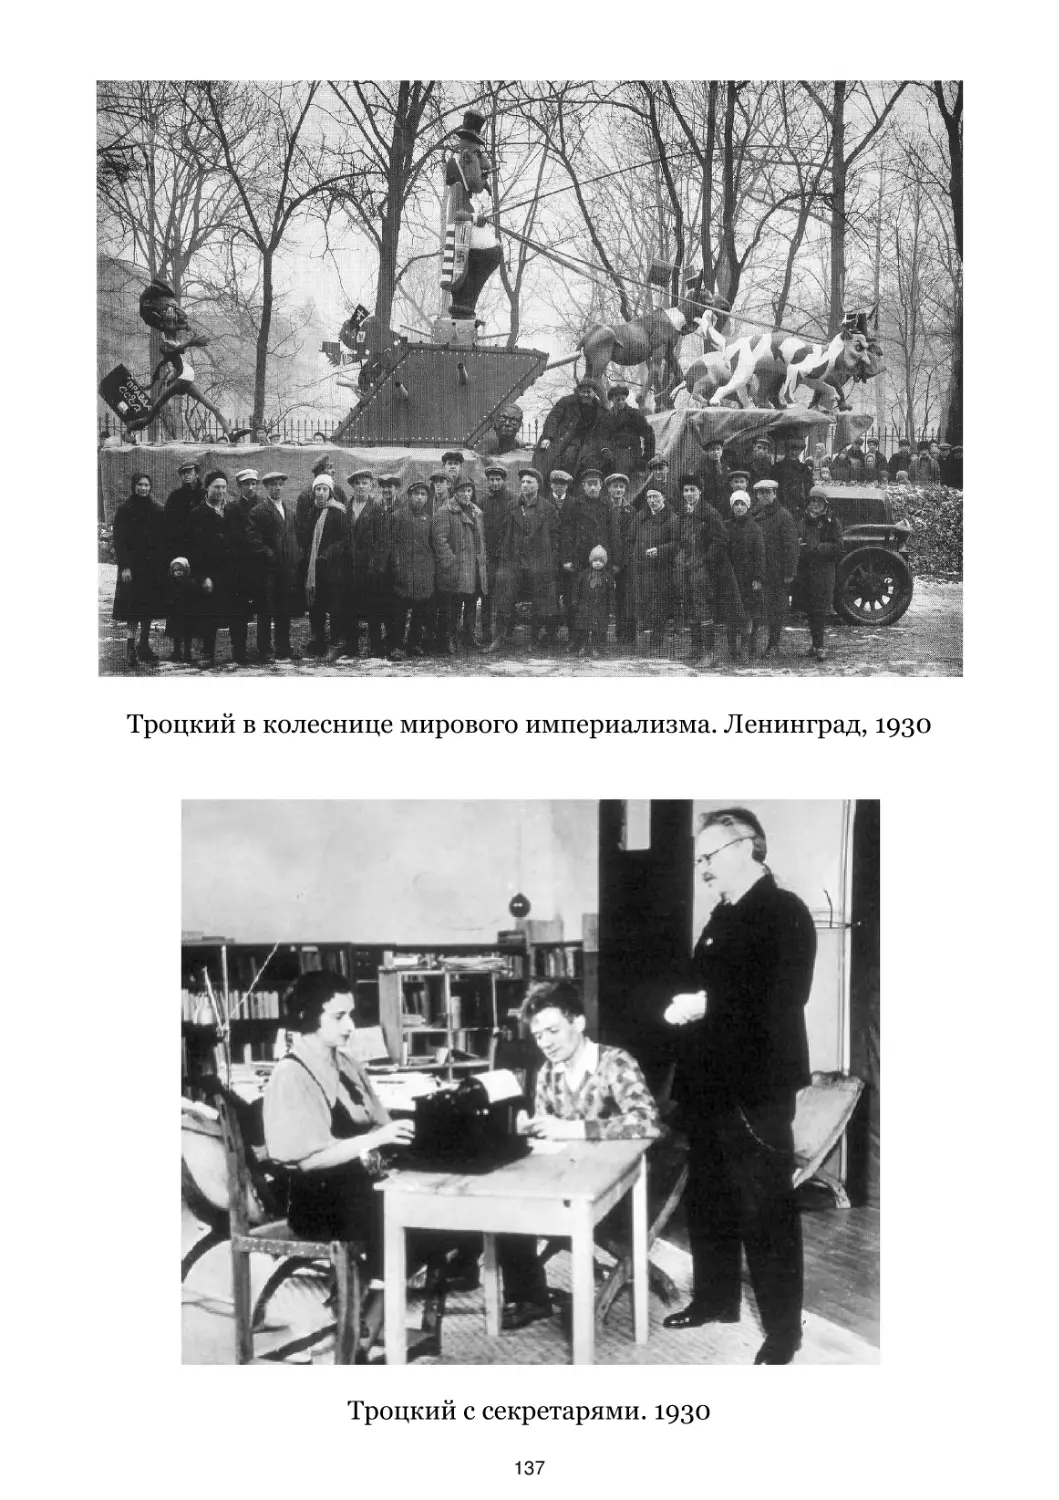 Троцкий в колеснице мирового империализма. Ленинград, 1930
Троцкий с секретарями. 1930